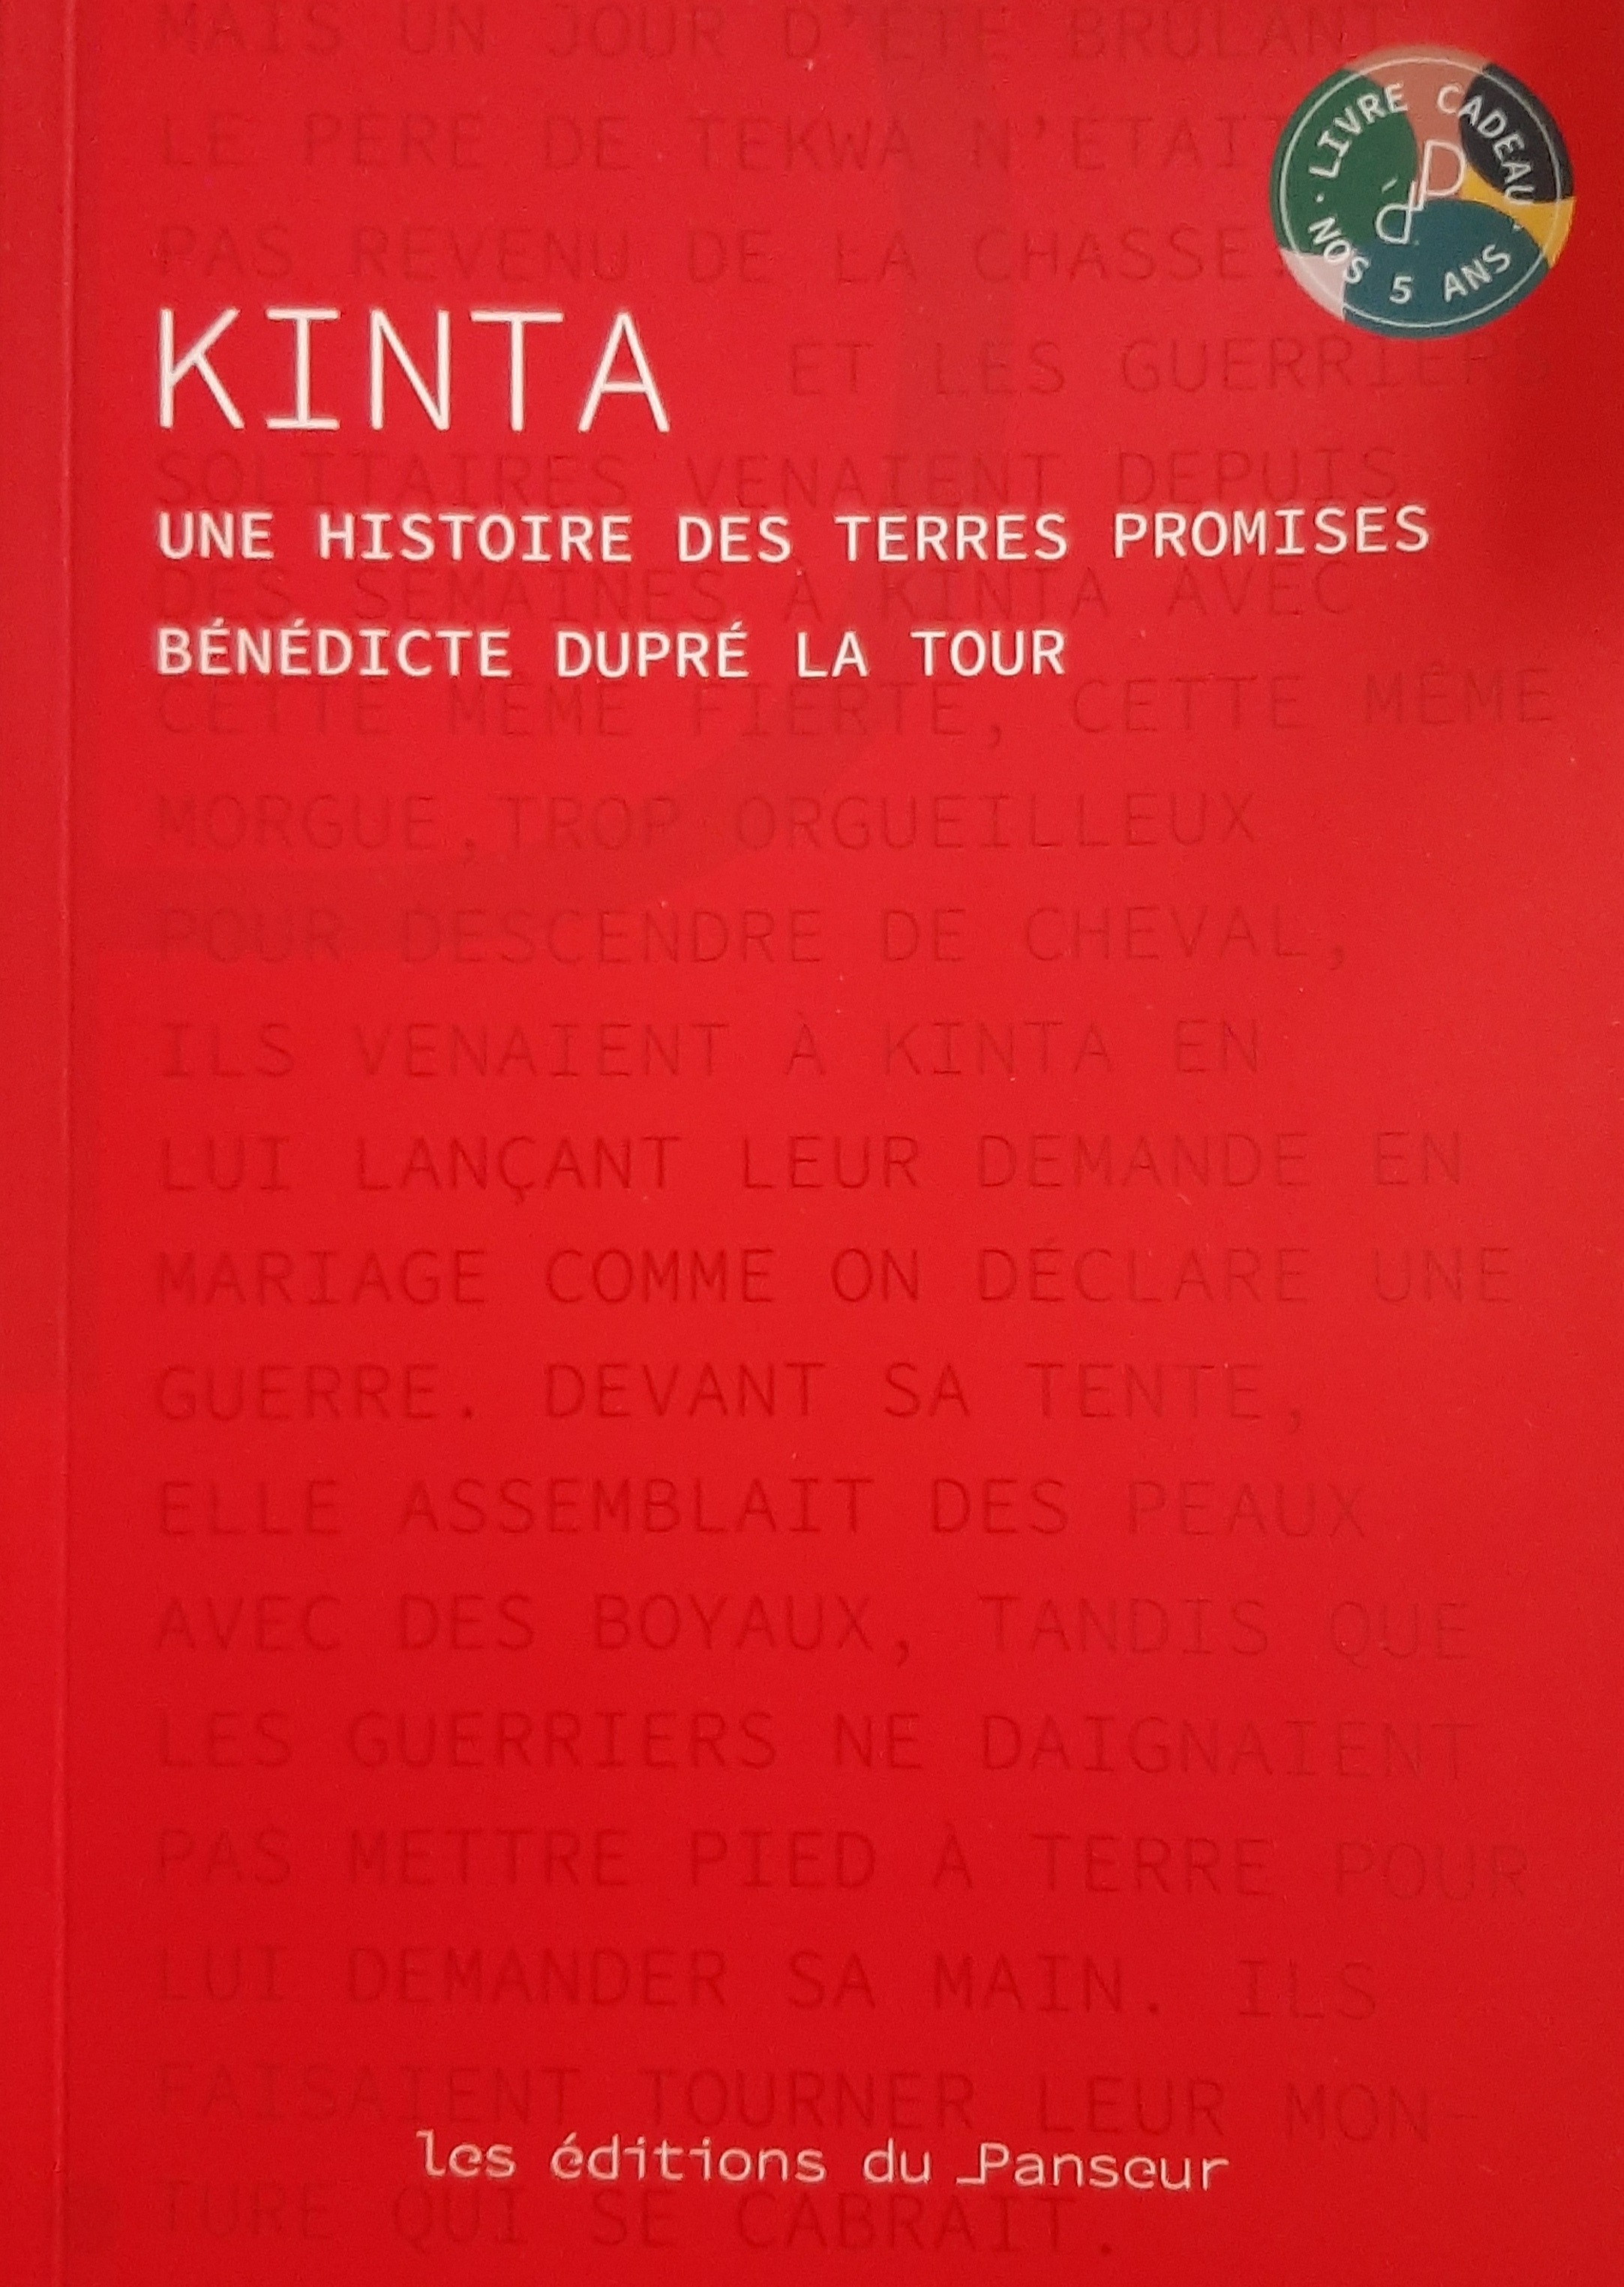 Kinta, histoire terres promises Bénédicte Dupré Tour… coup cœur